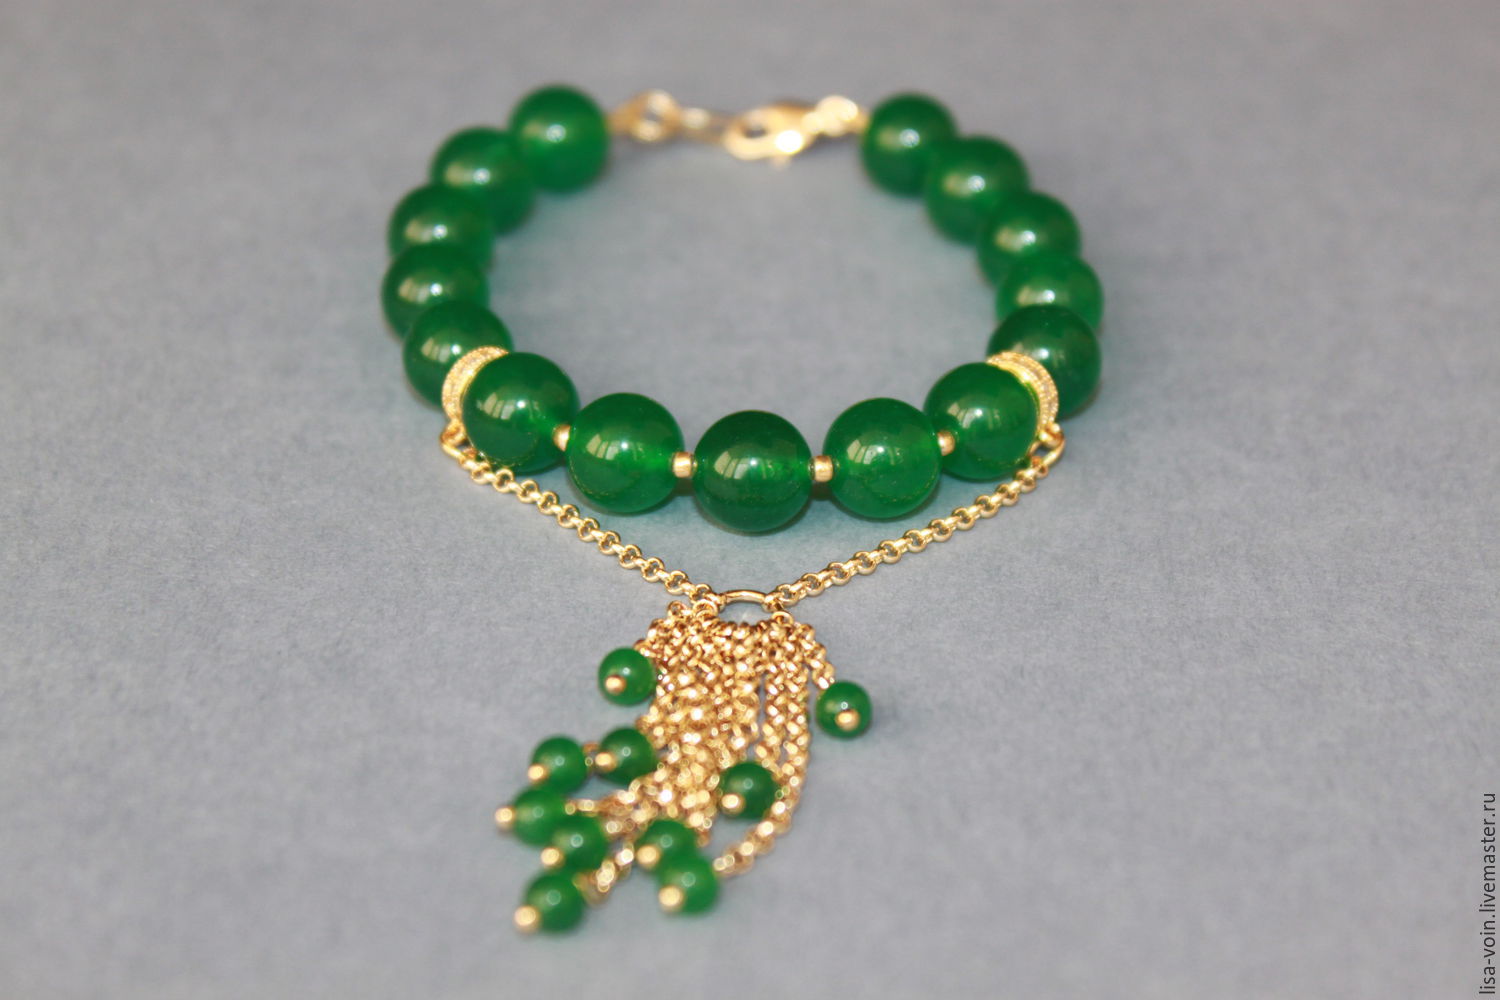 Браслет "Tassels emerald" жадеит зеленый, позолоченная фурнитура